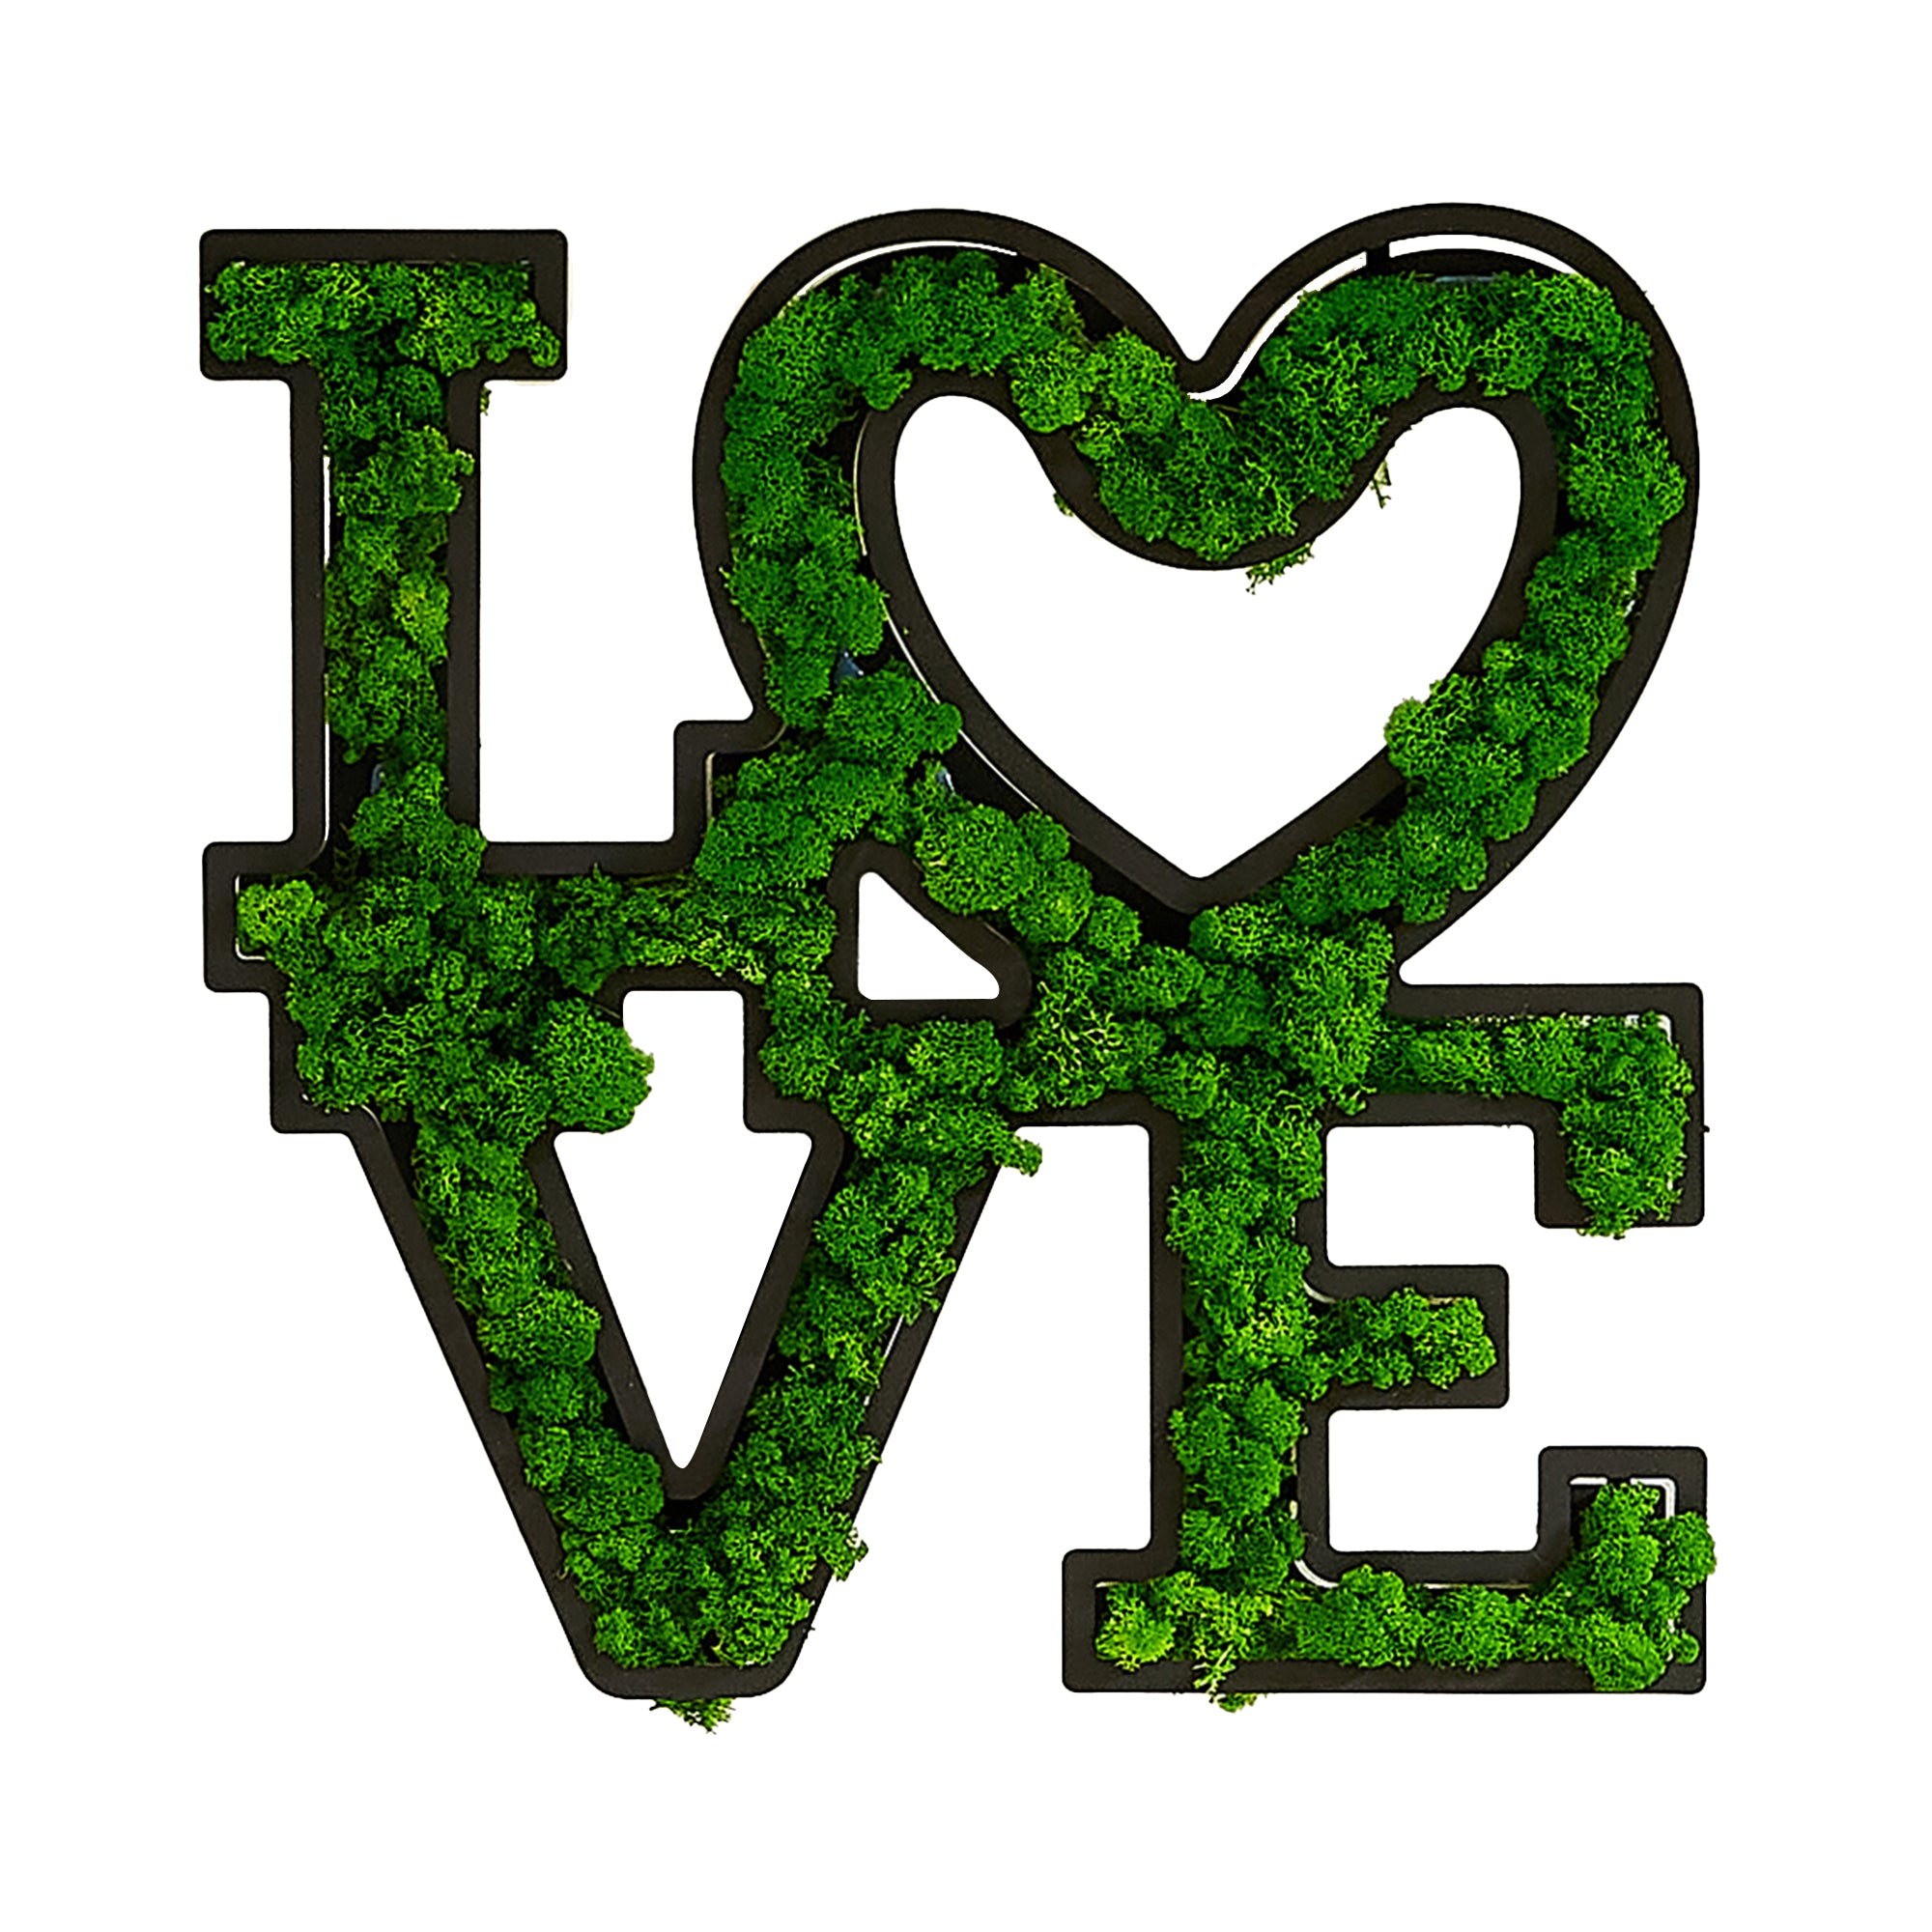 LOVE Letter Art Moss Wall Decor green-iron